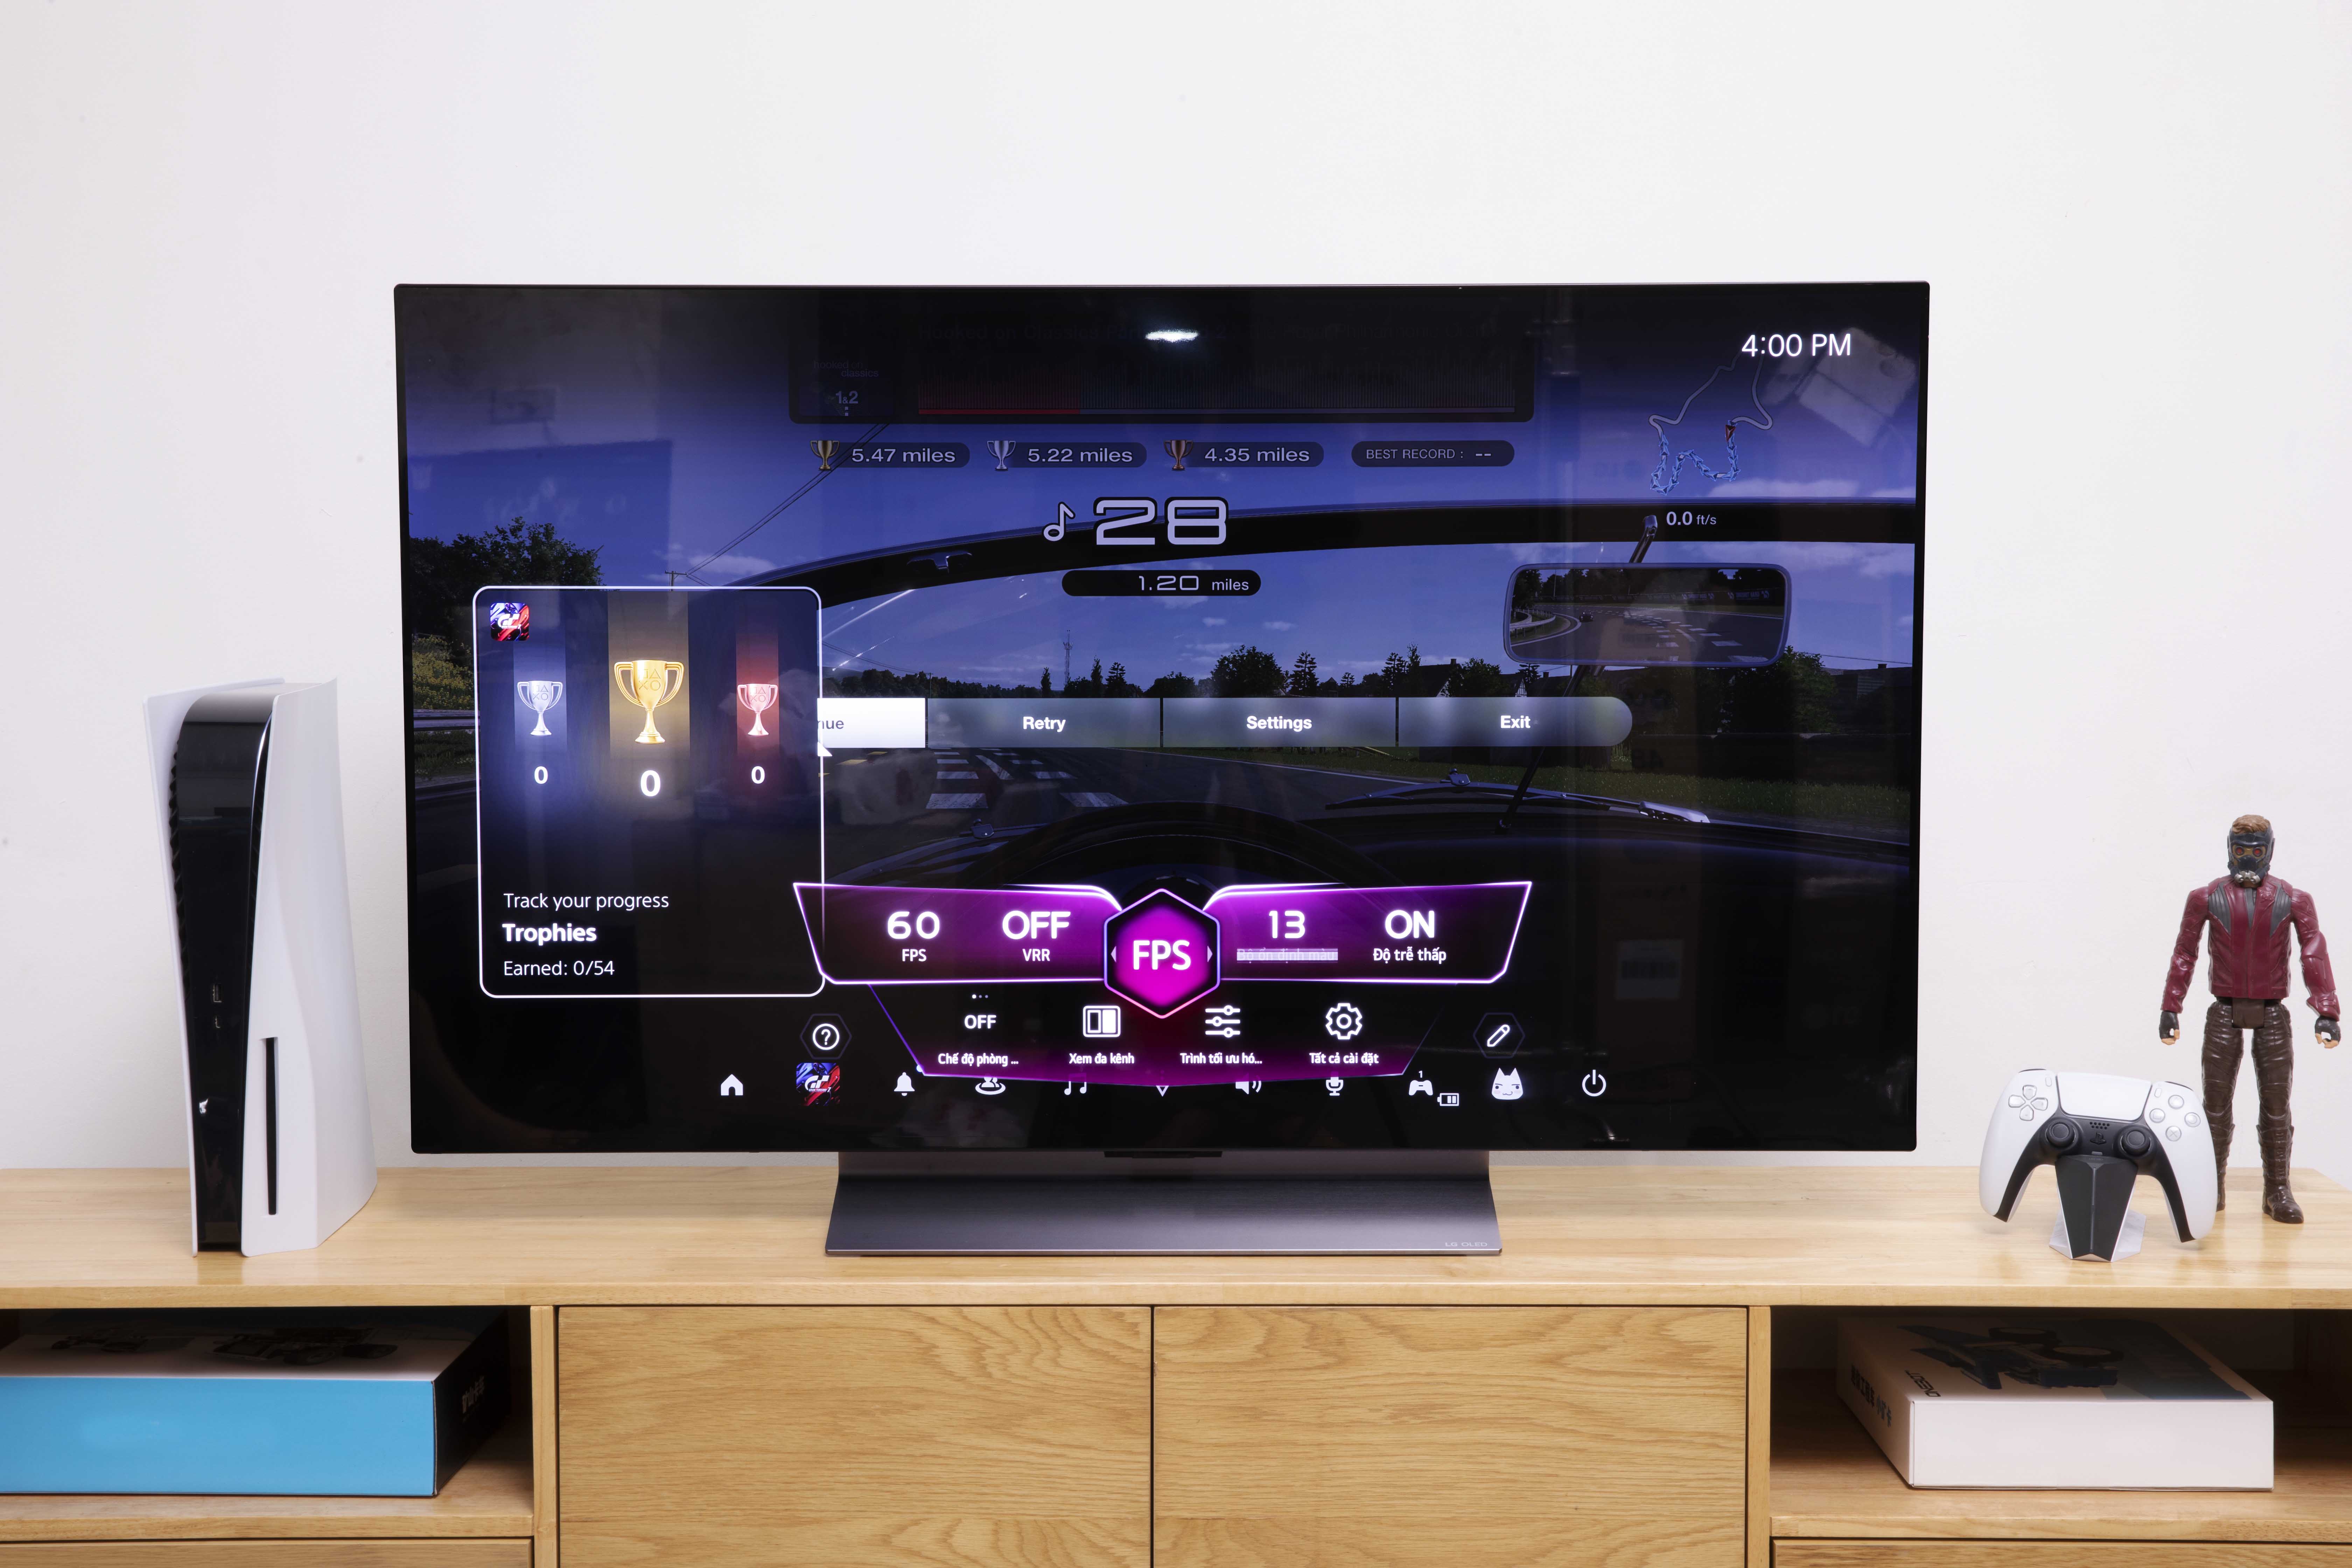 Chiếc Smart TV này được thiết kế để chơi game.